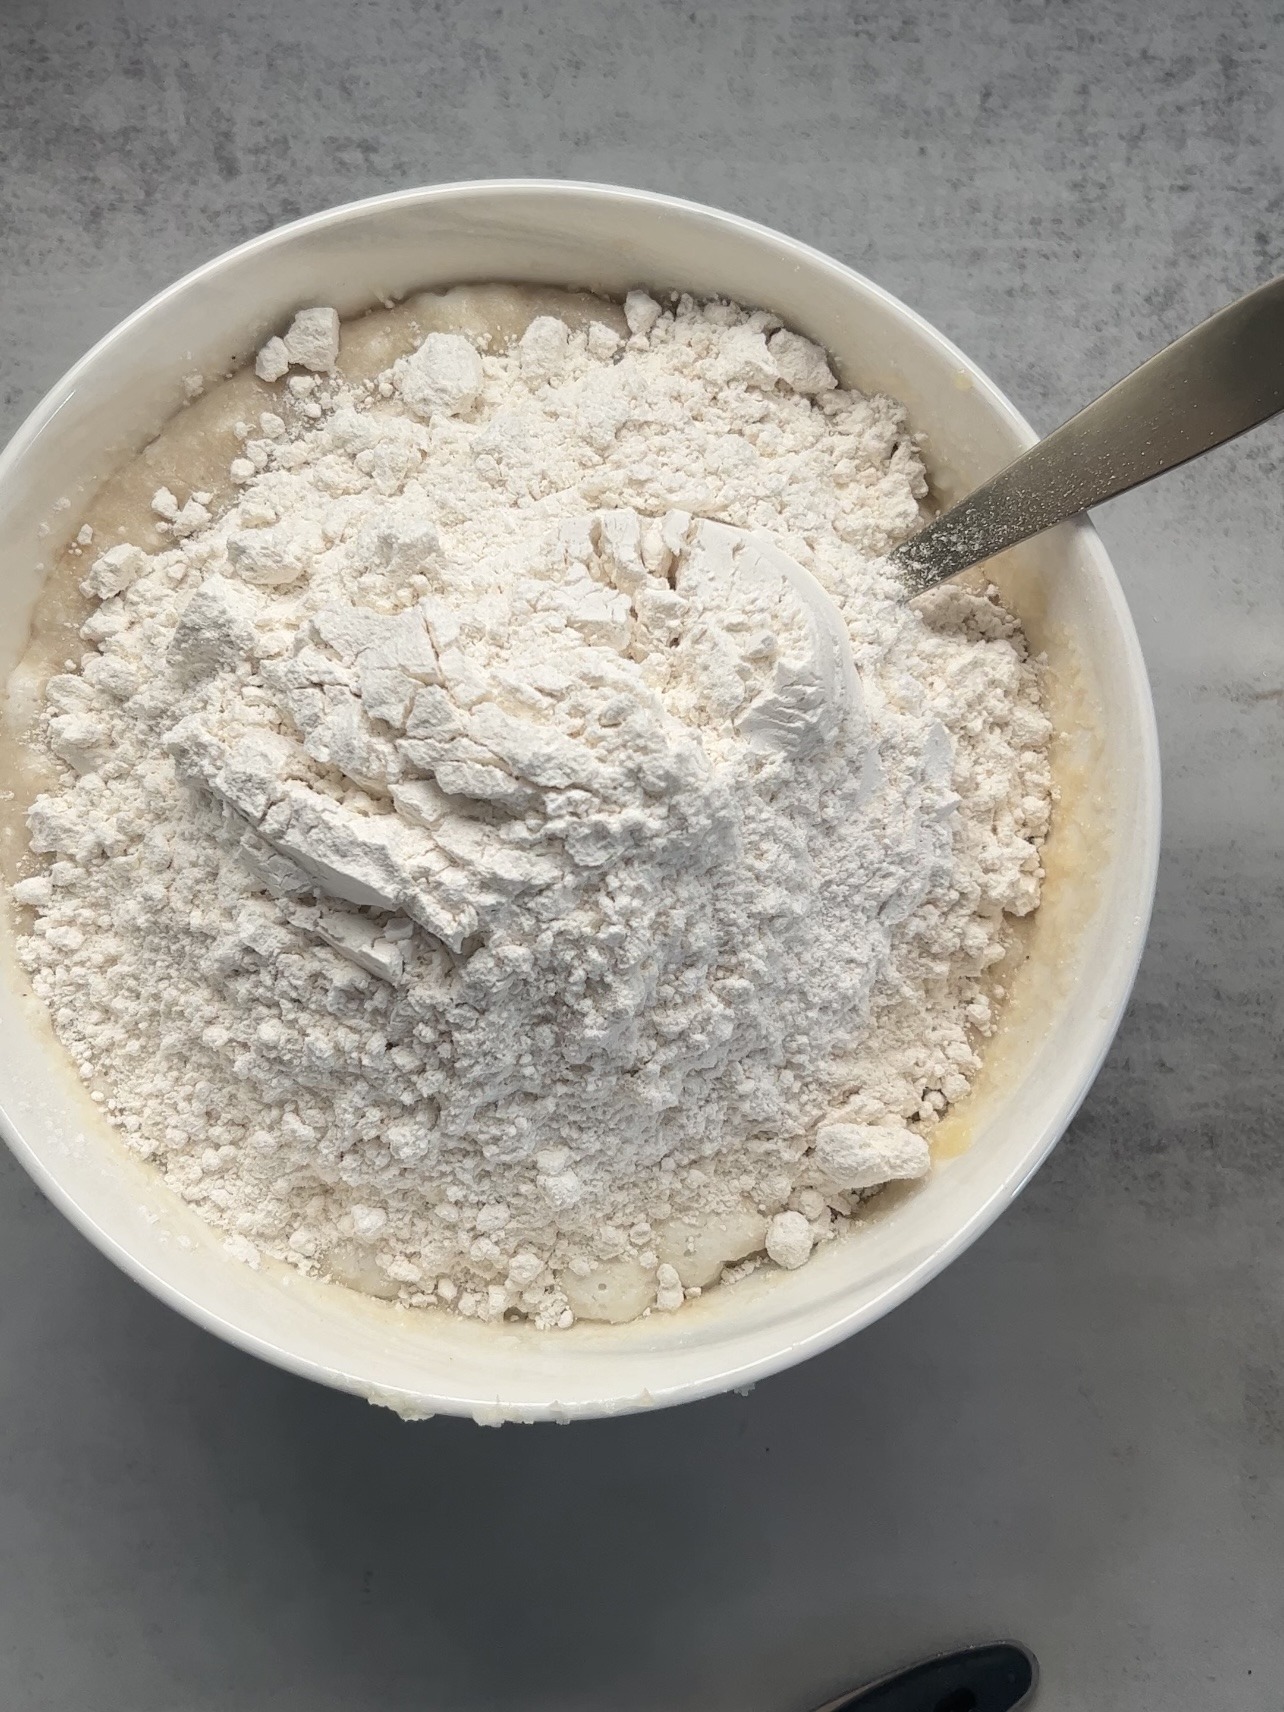 Adding the flour to the bowl.